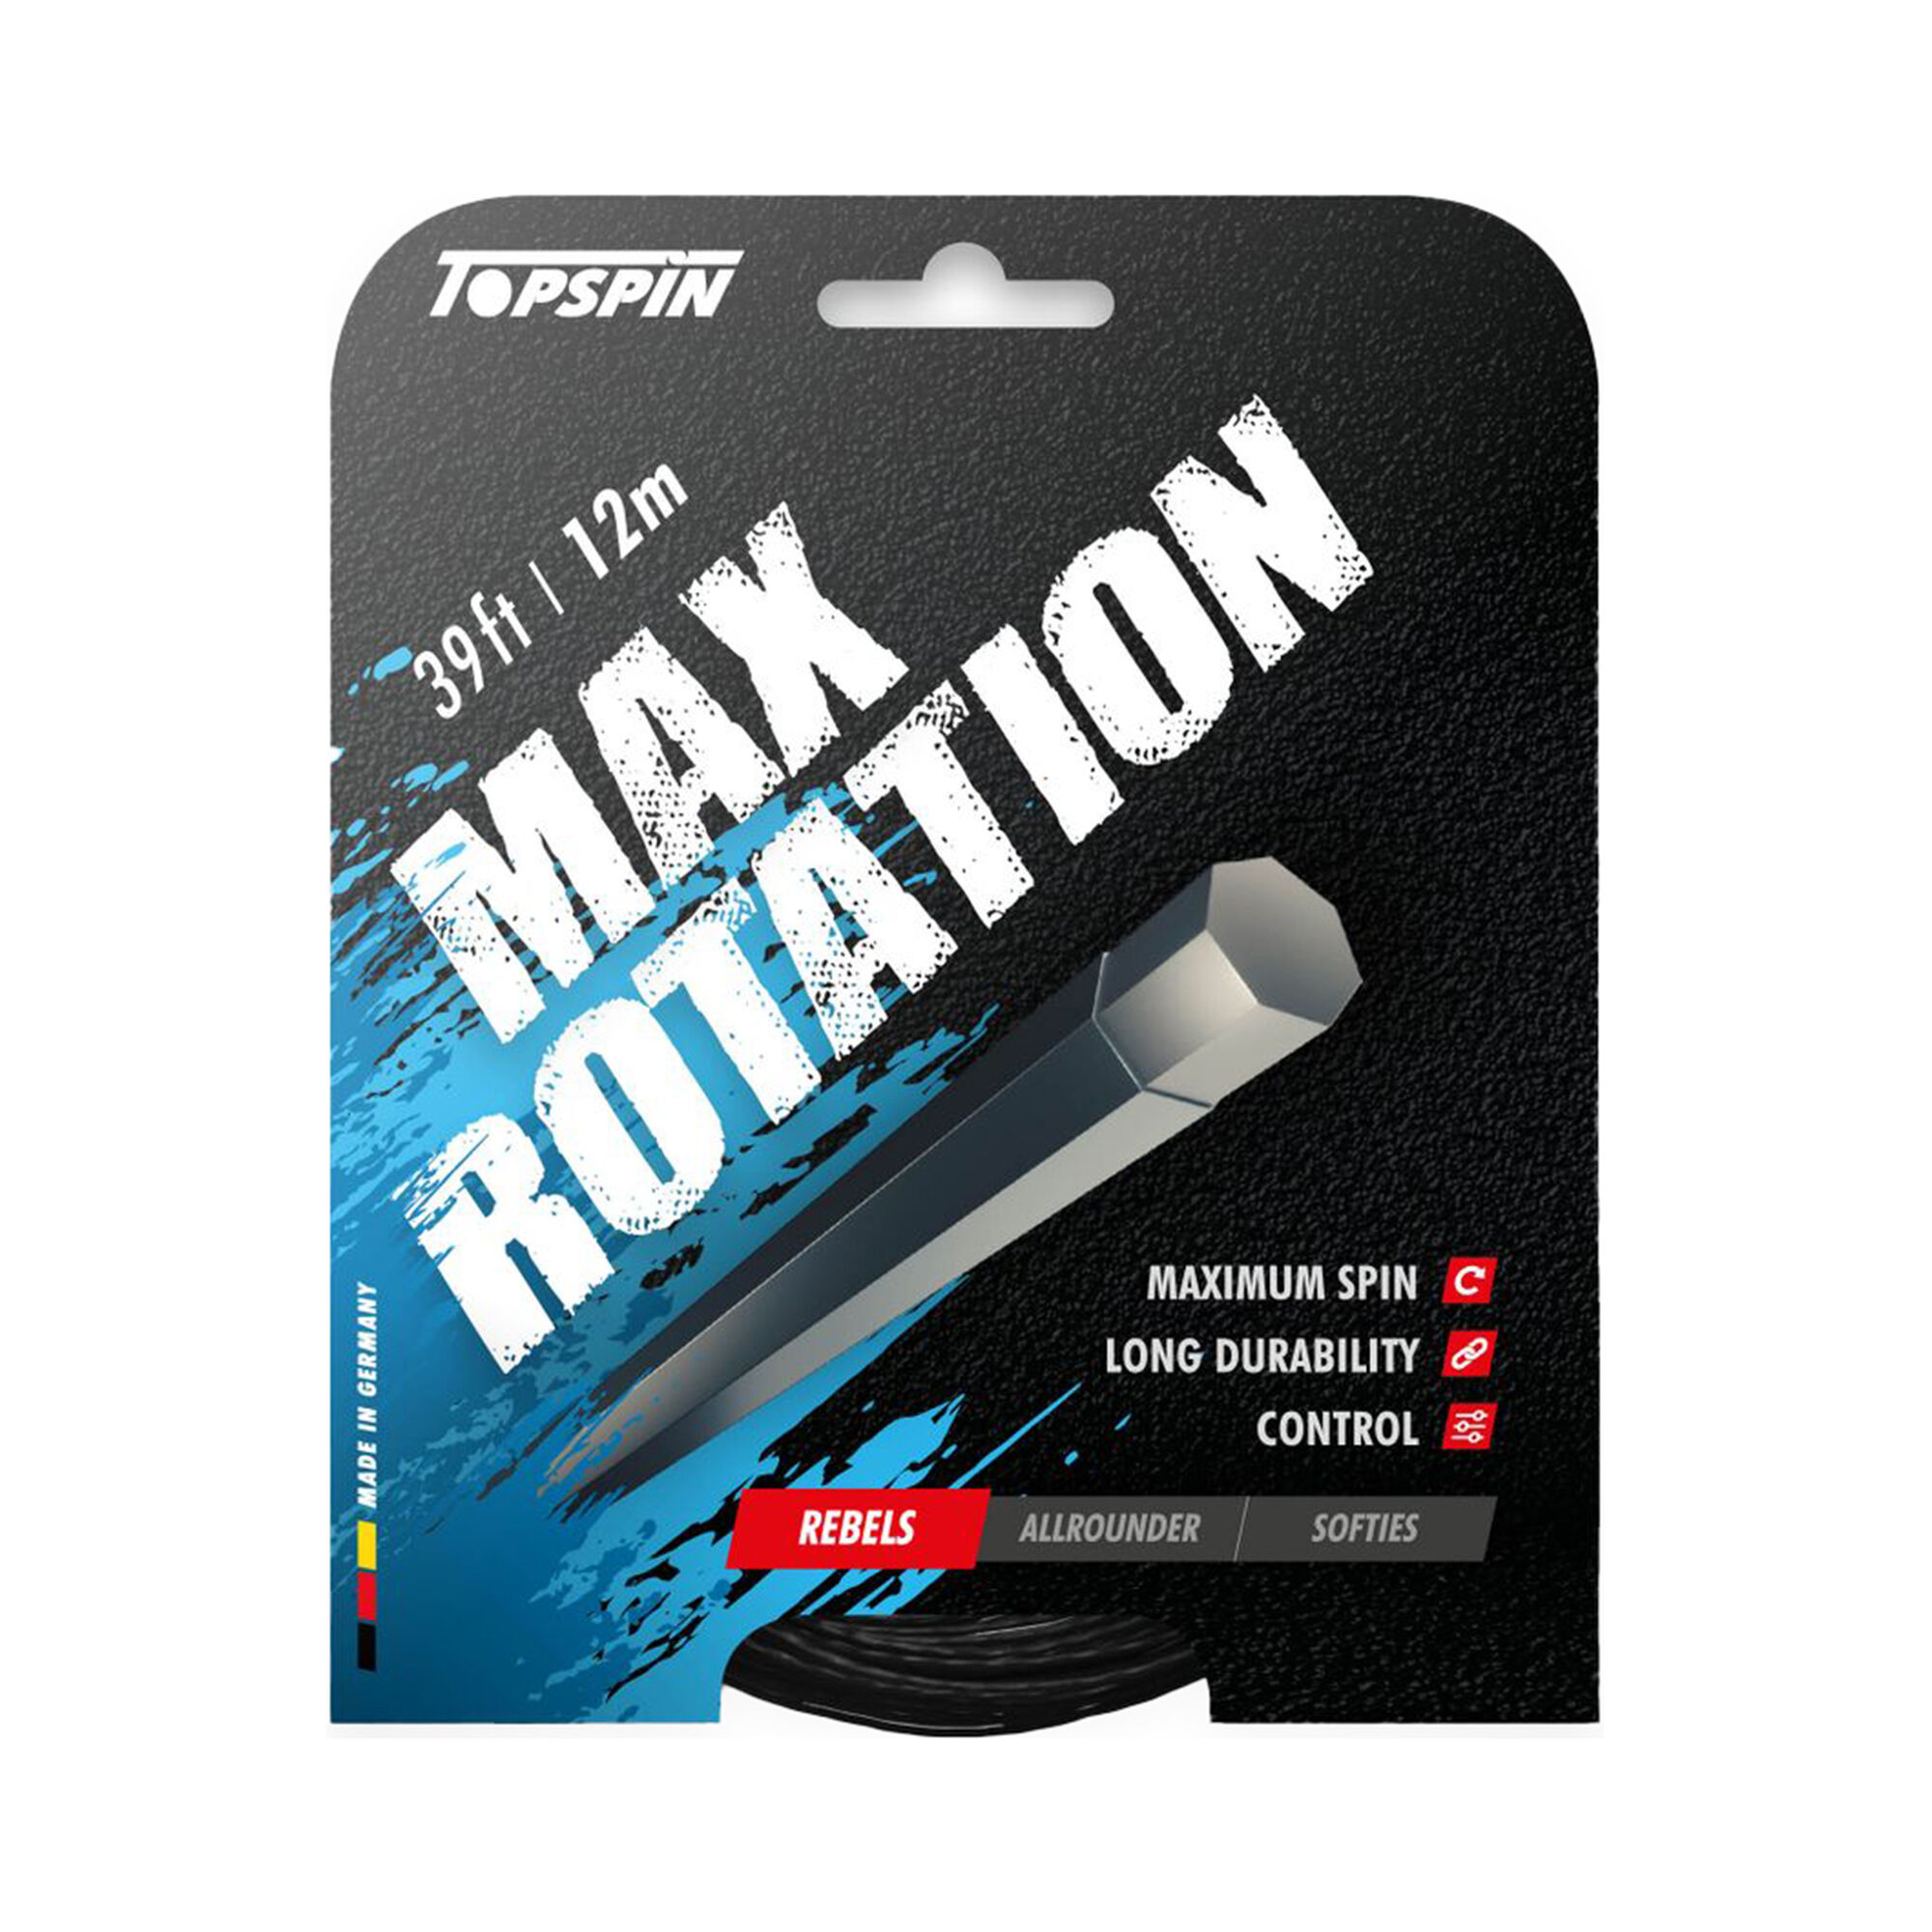 TOPSPIN Max Rotation 12m. 1.27, 1.31